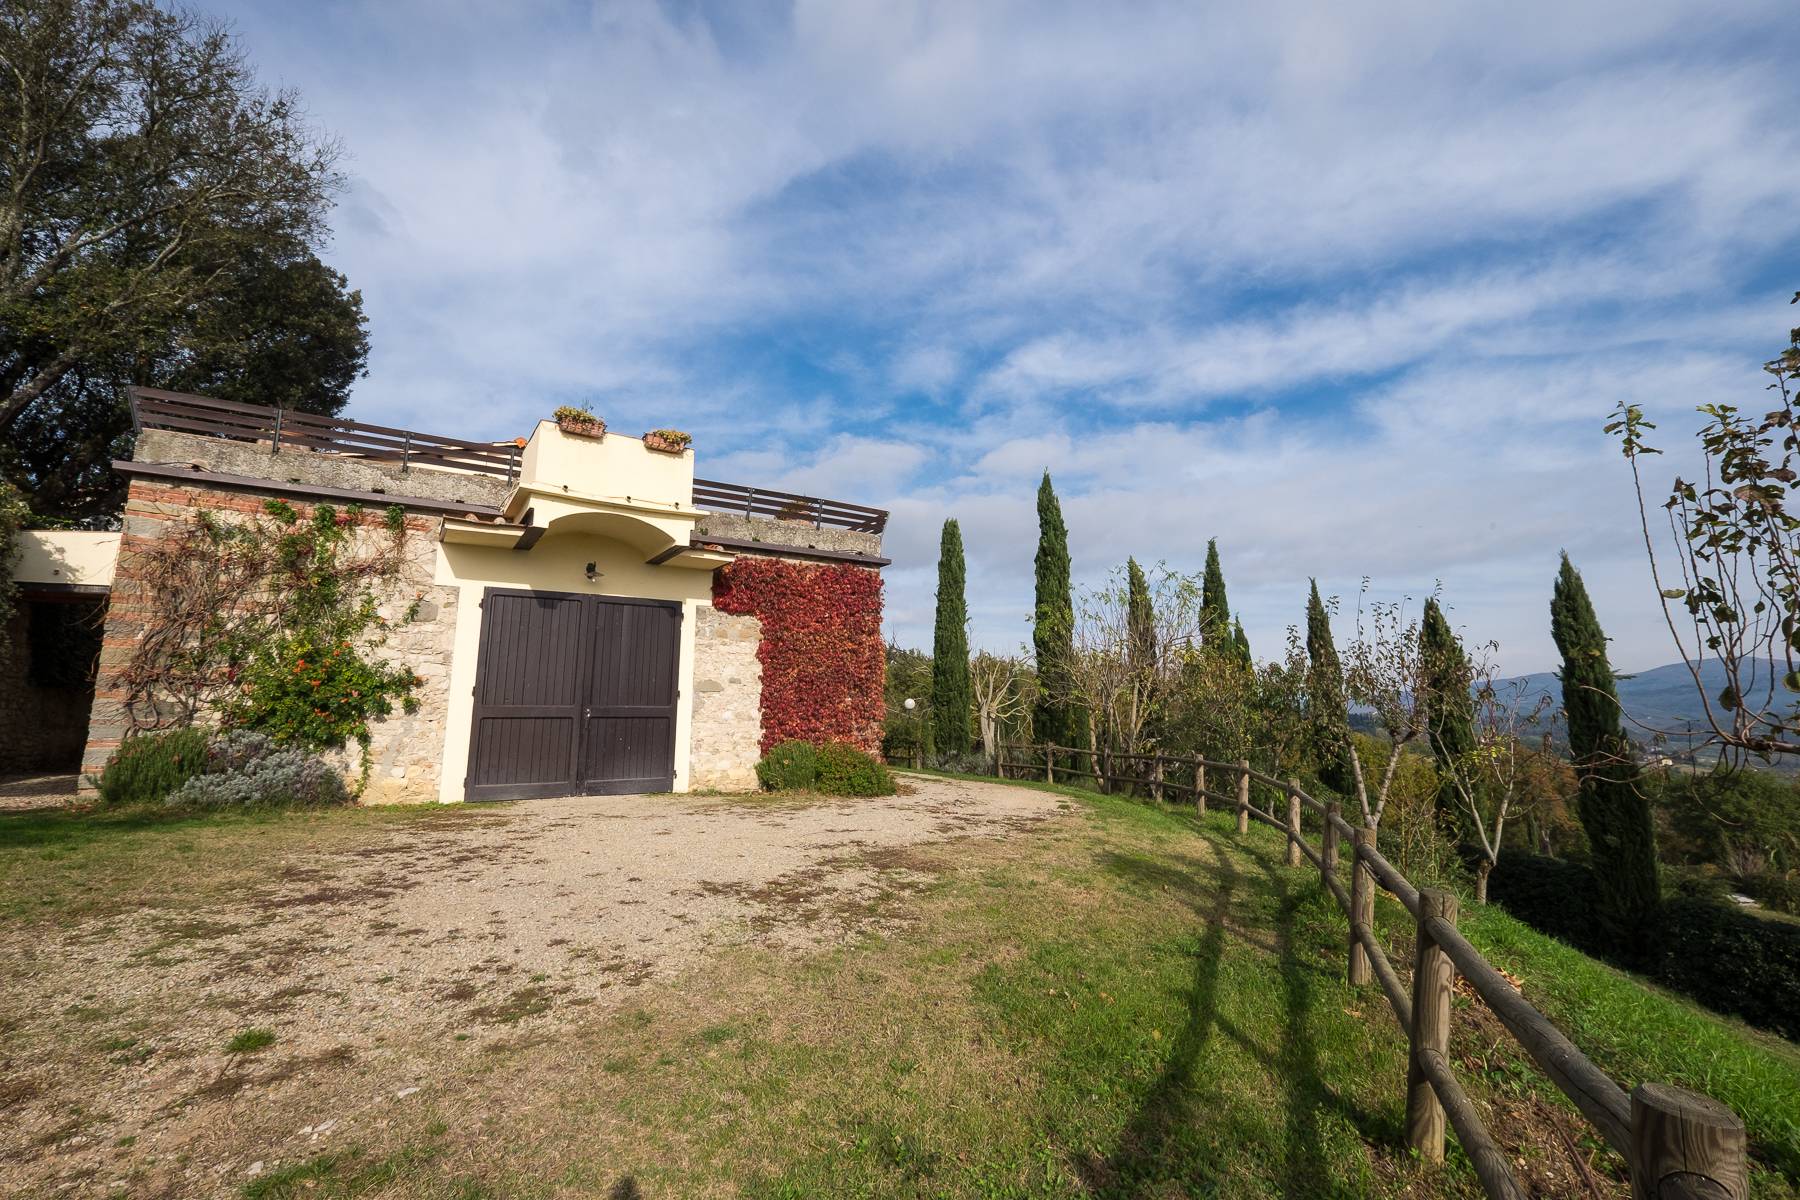 Villa in Vendita a Rignano Sull'Arno: 5 locali, 3000 mq - Foto 24